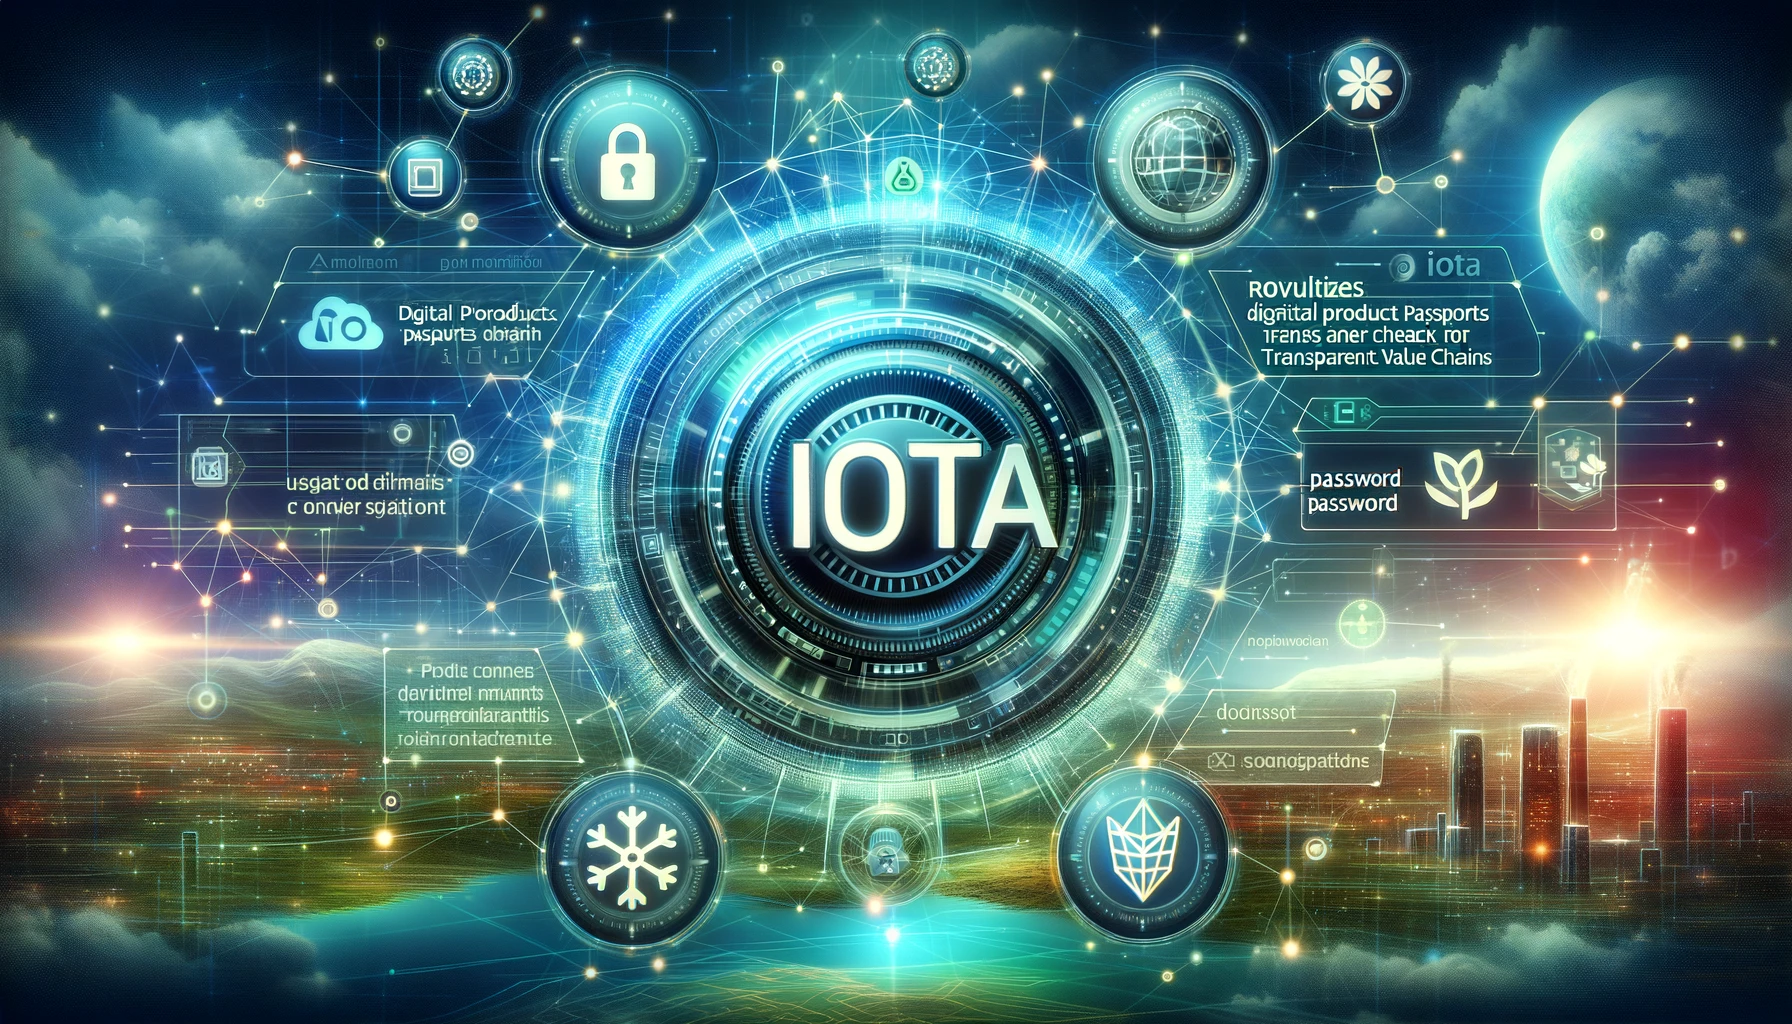 IOTA Identity 1.1 Unveiled: Revolutionizing Digital Credentials